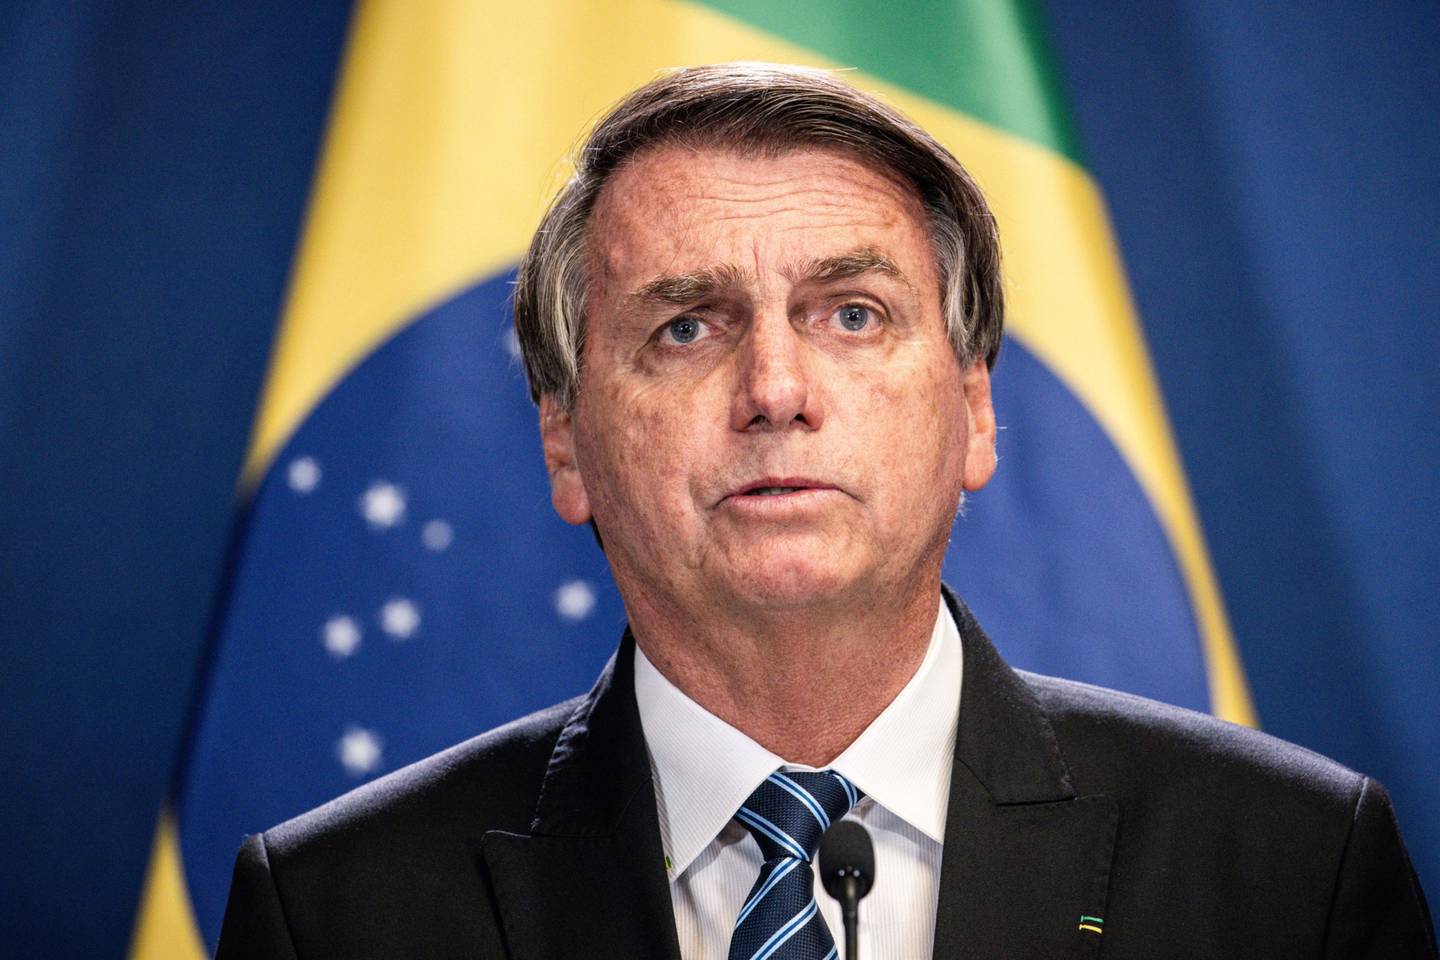 Bolsonaro tiene problemas para encontrar un CEO después de que el economista Adriano Pires se retirara. Pires aceptó inicialmente, pero luego dijo que no podía desvincularse de su negocio de consultoría lo suficientemente rápido.